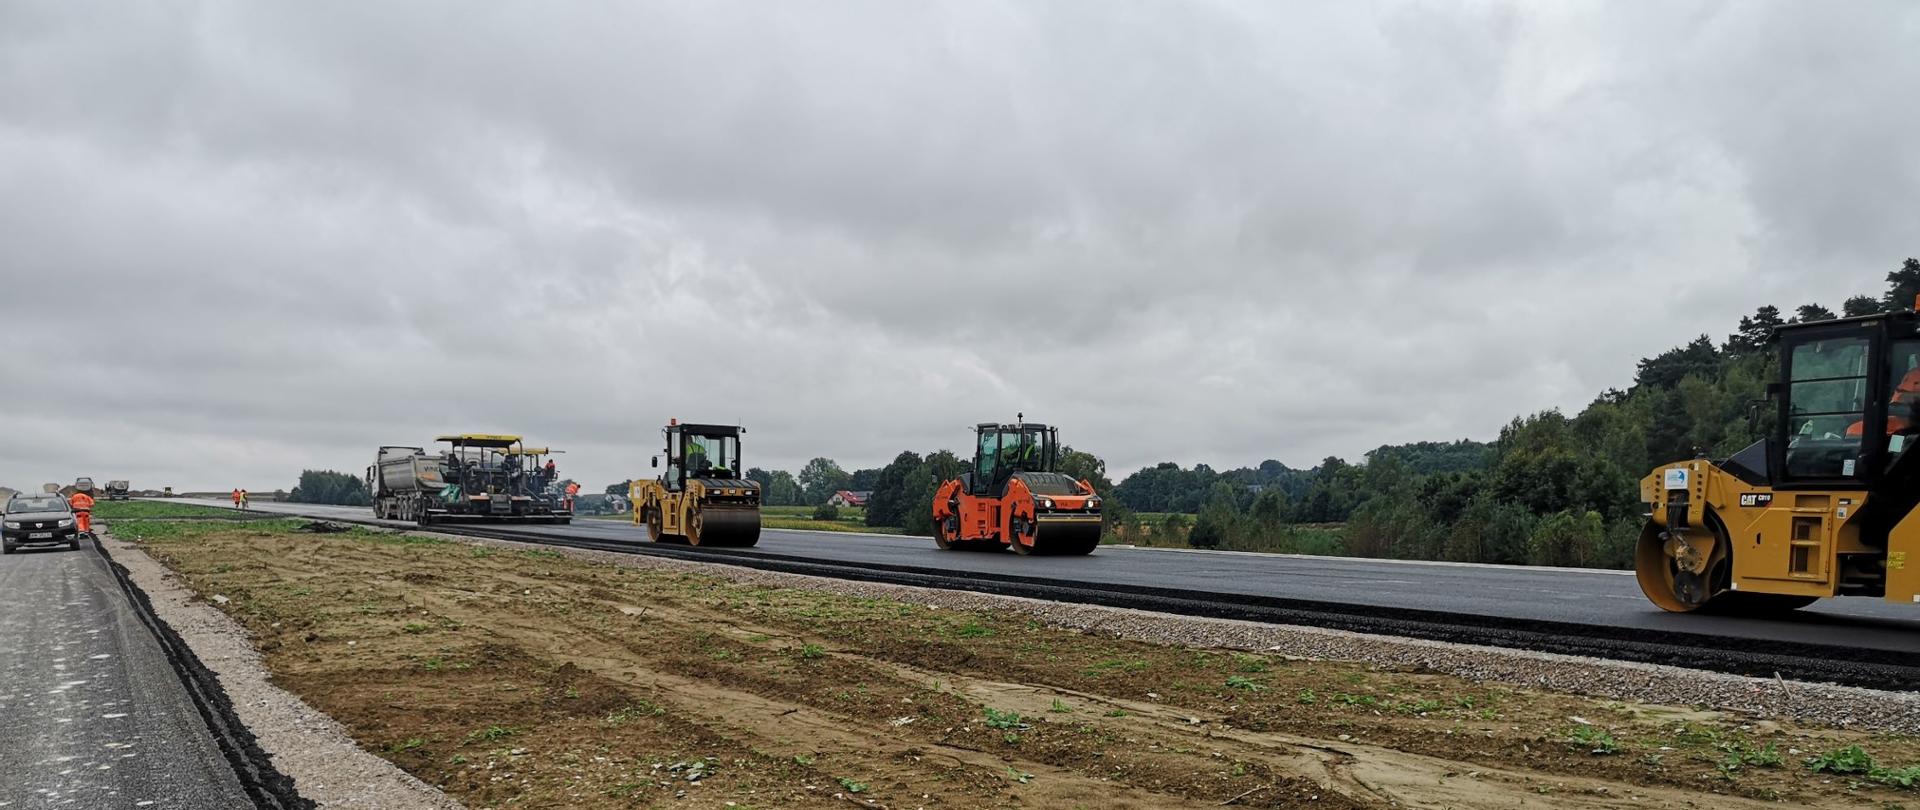 S7 budowa Miechów-Szczepanowice, walce drogowe wyrównują i zagęszczają układany asfalt